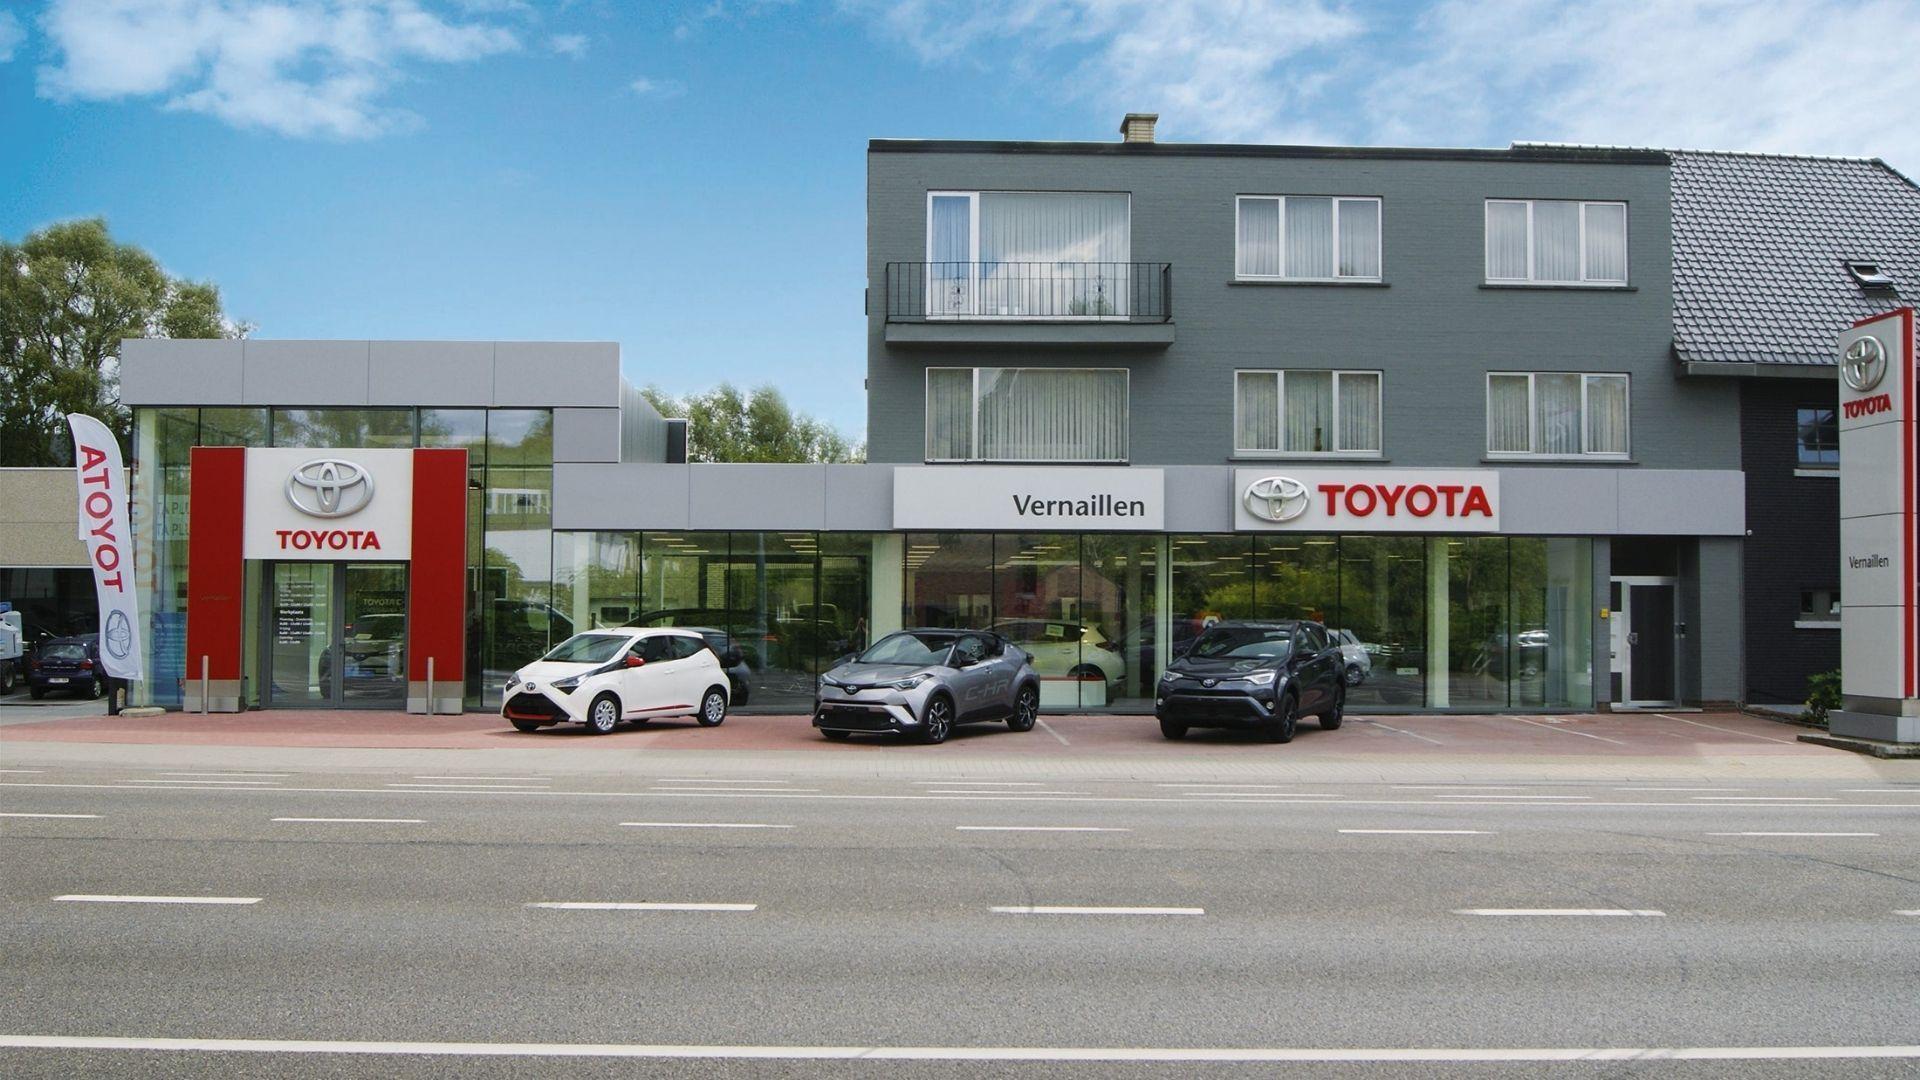 De showroom met prachtig glaswerk van Toyota garage Vernaillen in Ninove heeft een prominent plaatsje op de Albertlaan.